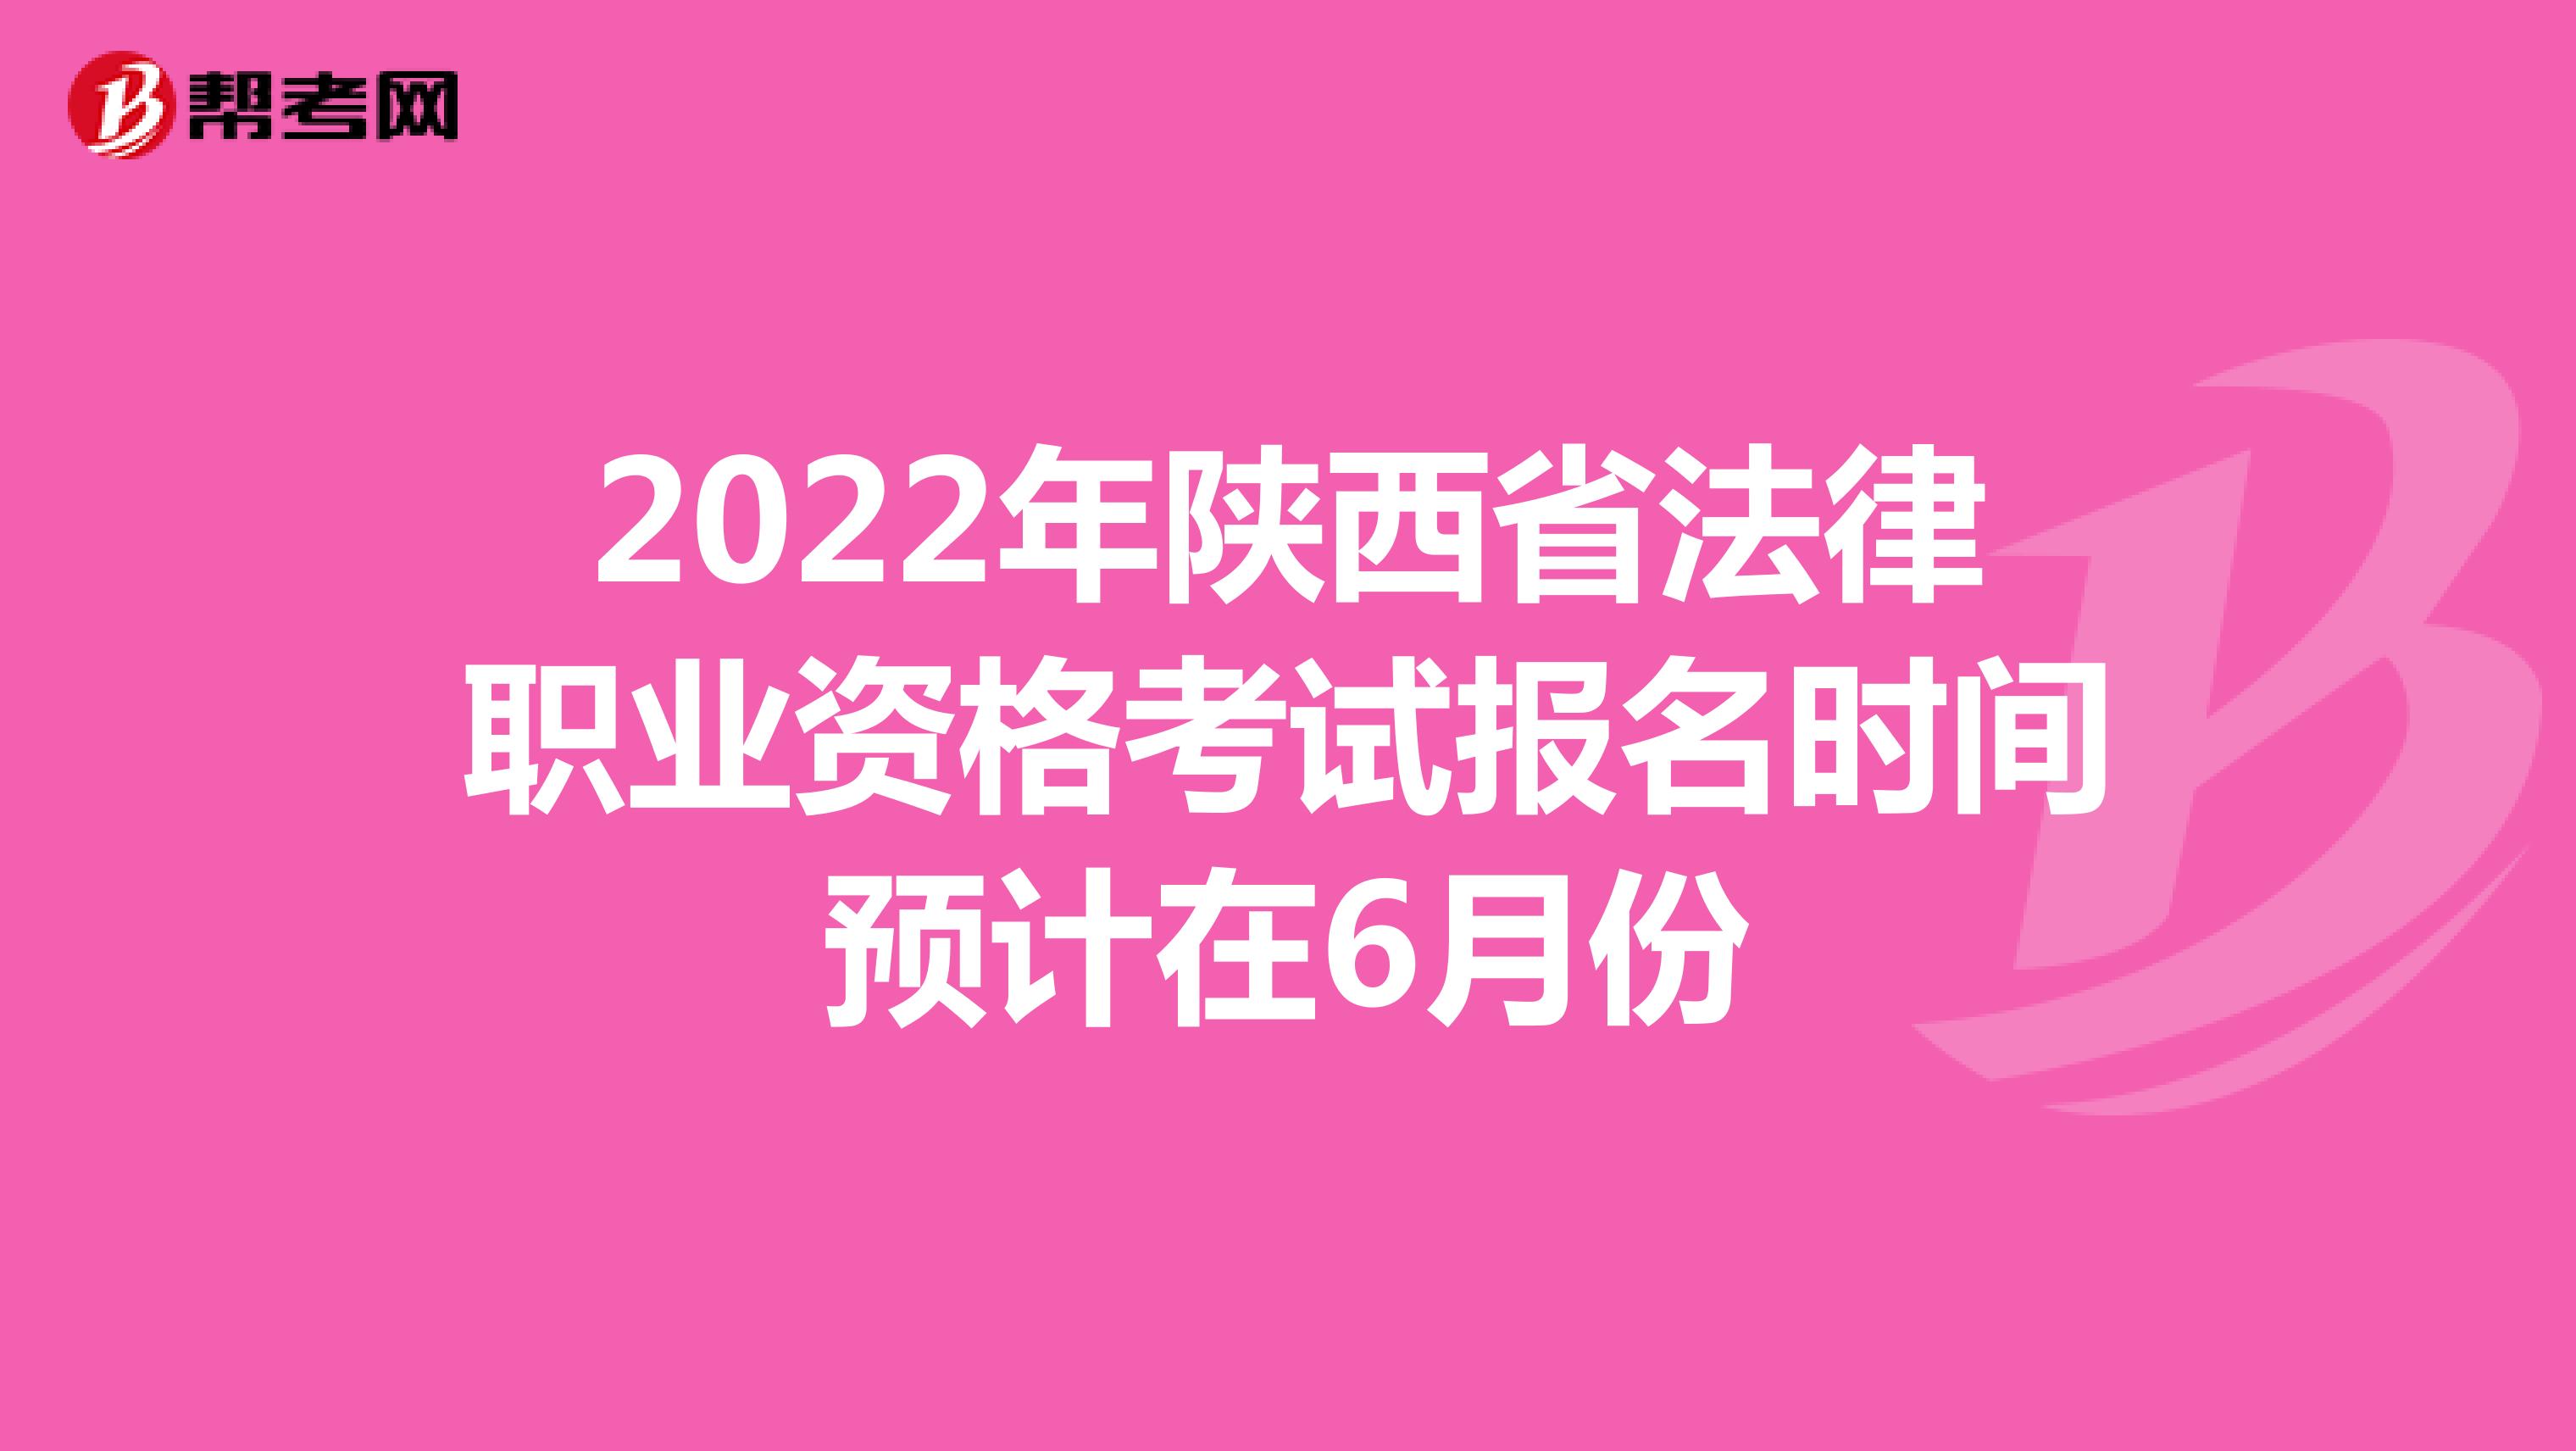 2022年陕西省法律职业资格考试报名时间预计在6月份